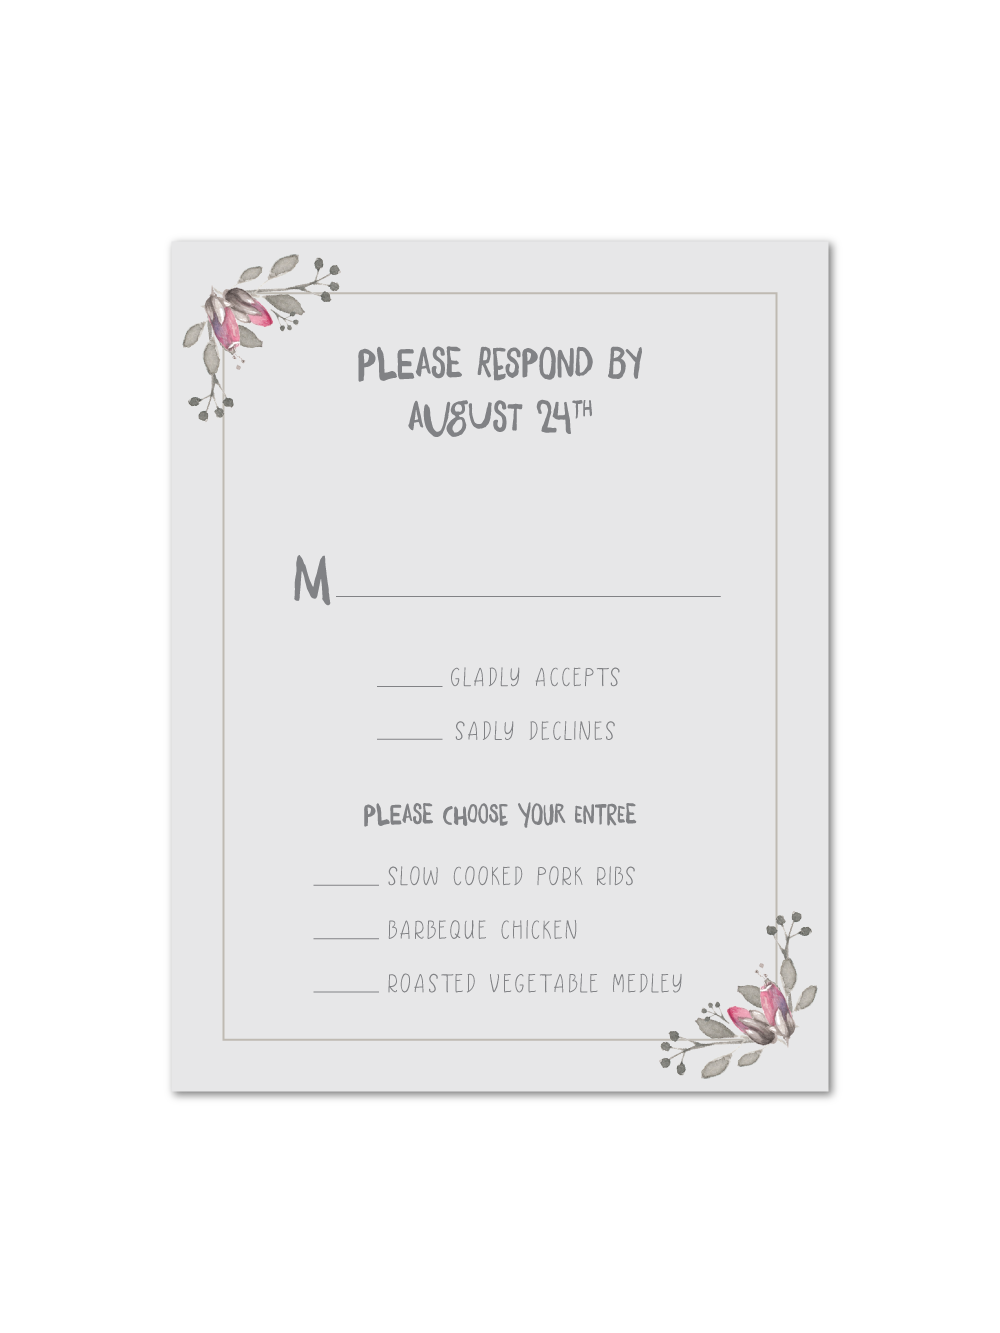 Font Convite Invitation Wedding Free HQ Image Clipart